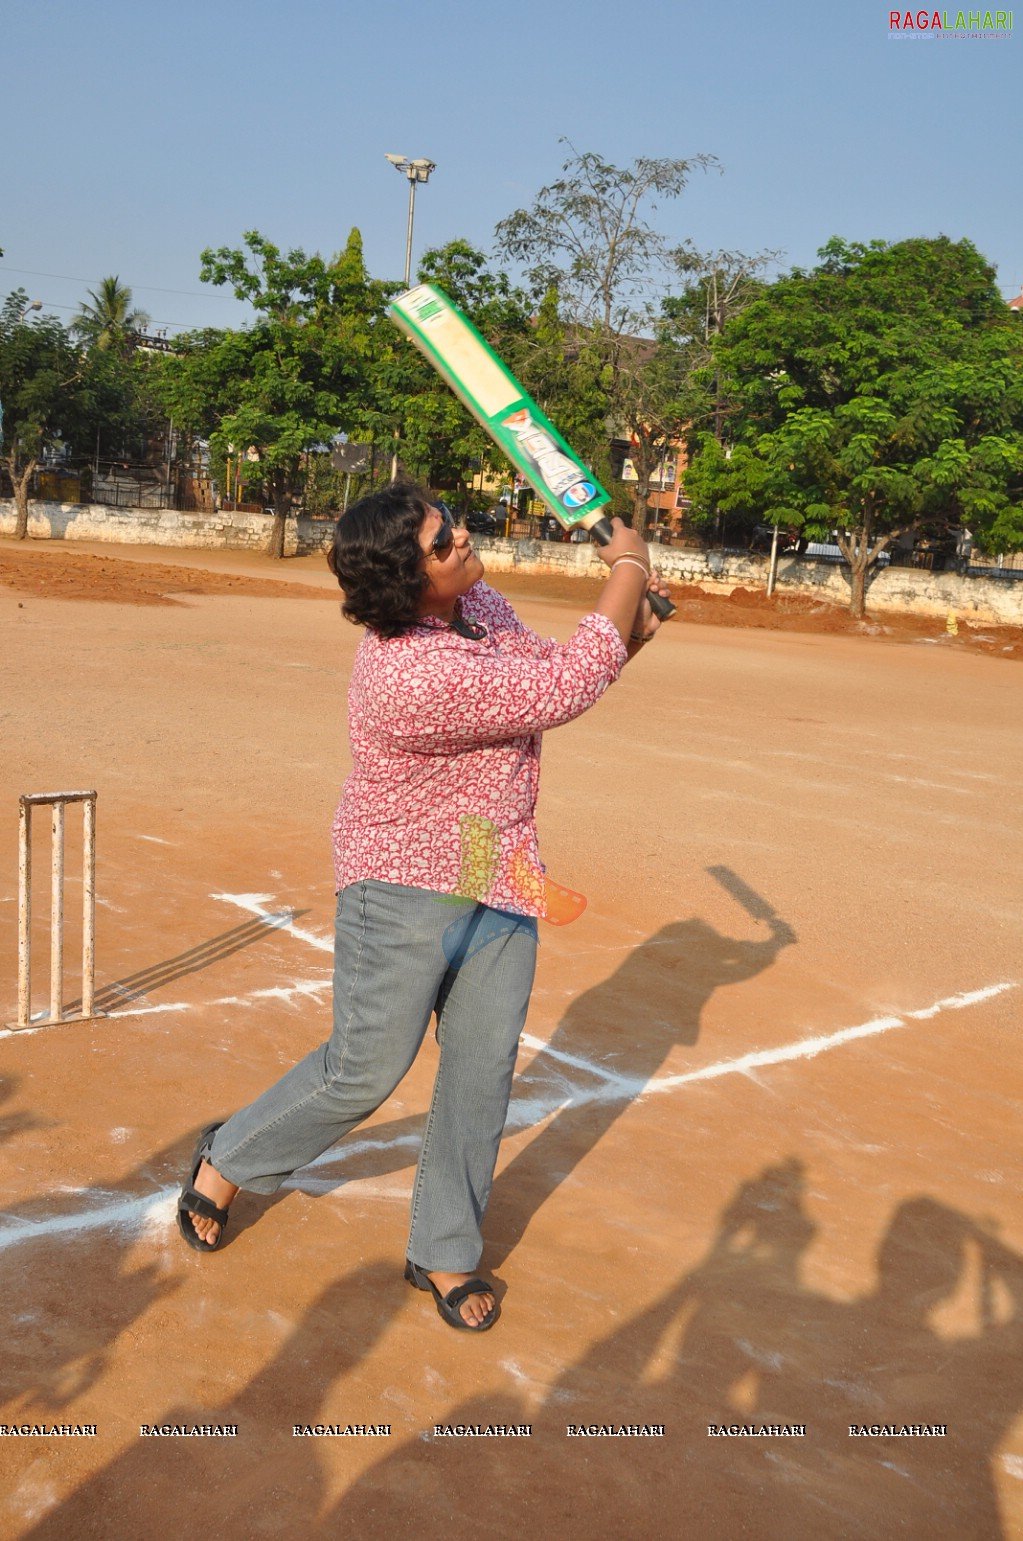 Big FM Women's Cricket Cup